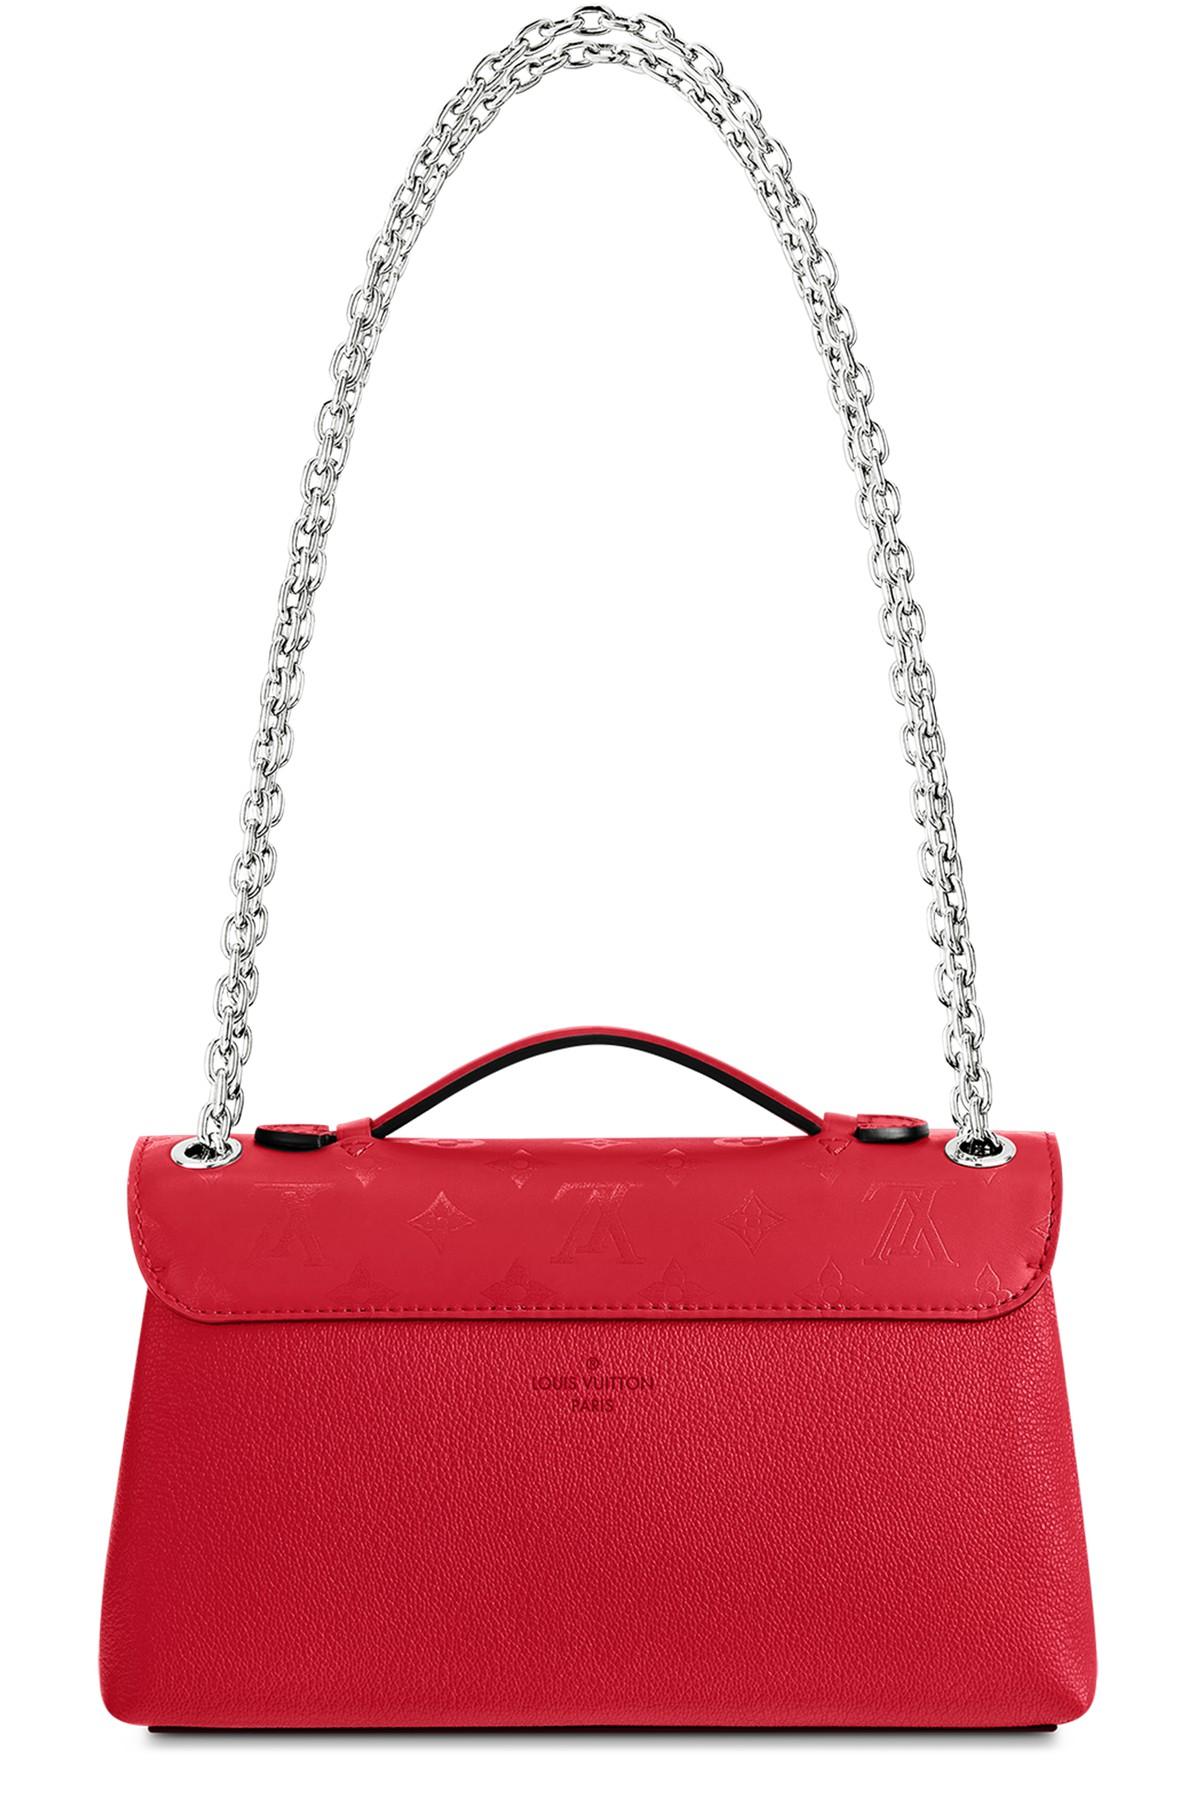 Louis Vuitton pre-owned Cuir Plume Handbag - Farfetch